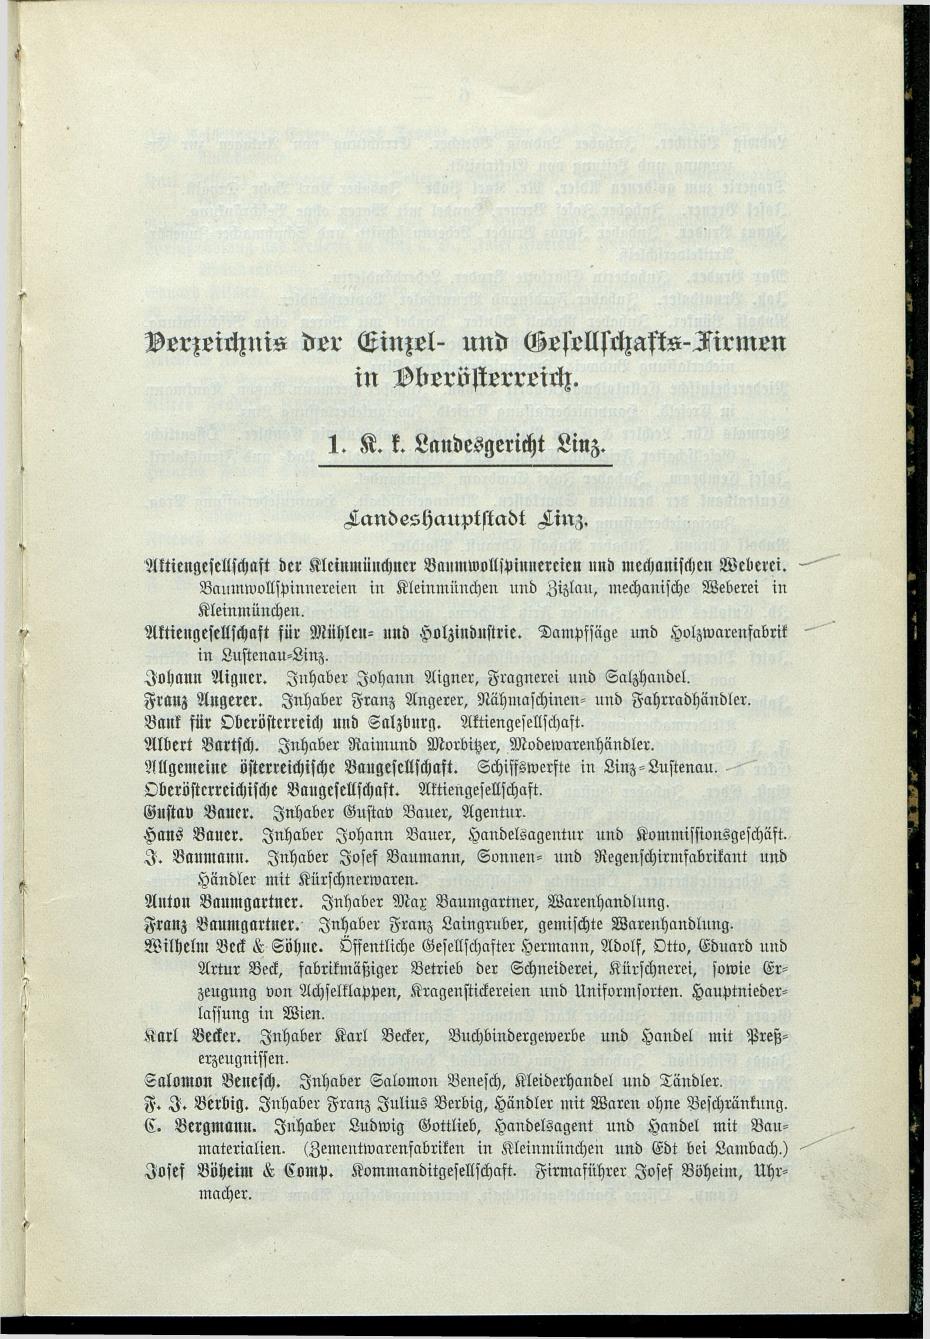 Verzeichnis der protokollierten Firmen und Genossenschaften in Oberösterreich 1908 - Page 9